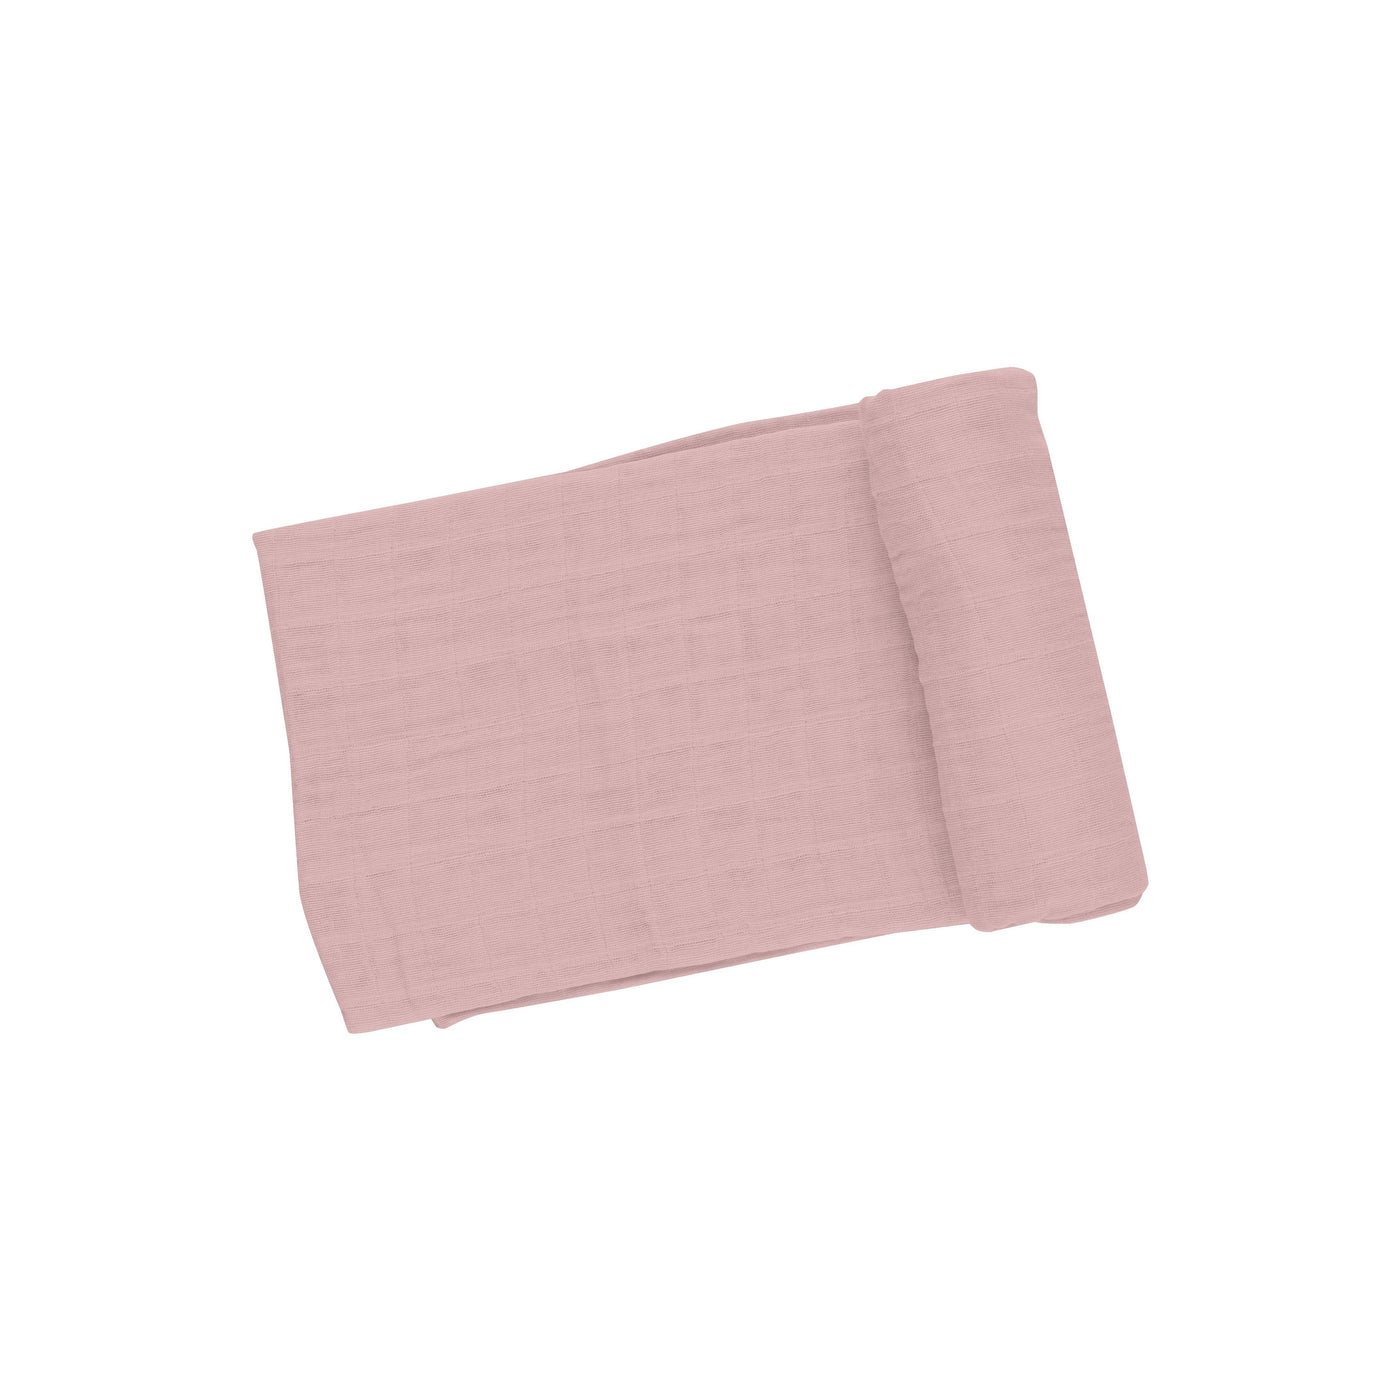 Swaddle Blanket - Dusty Pink Solid Muslin - Angel Dear